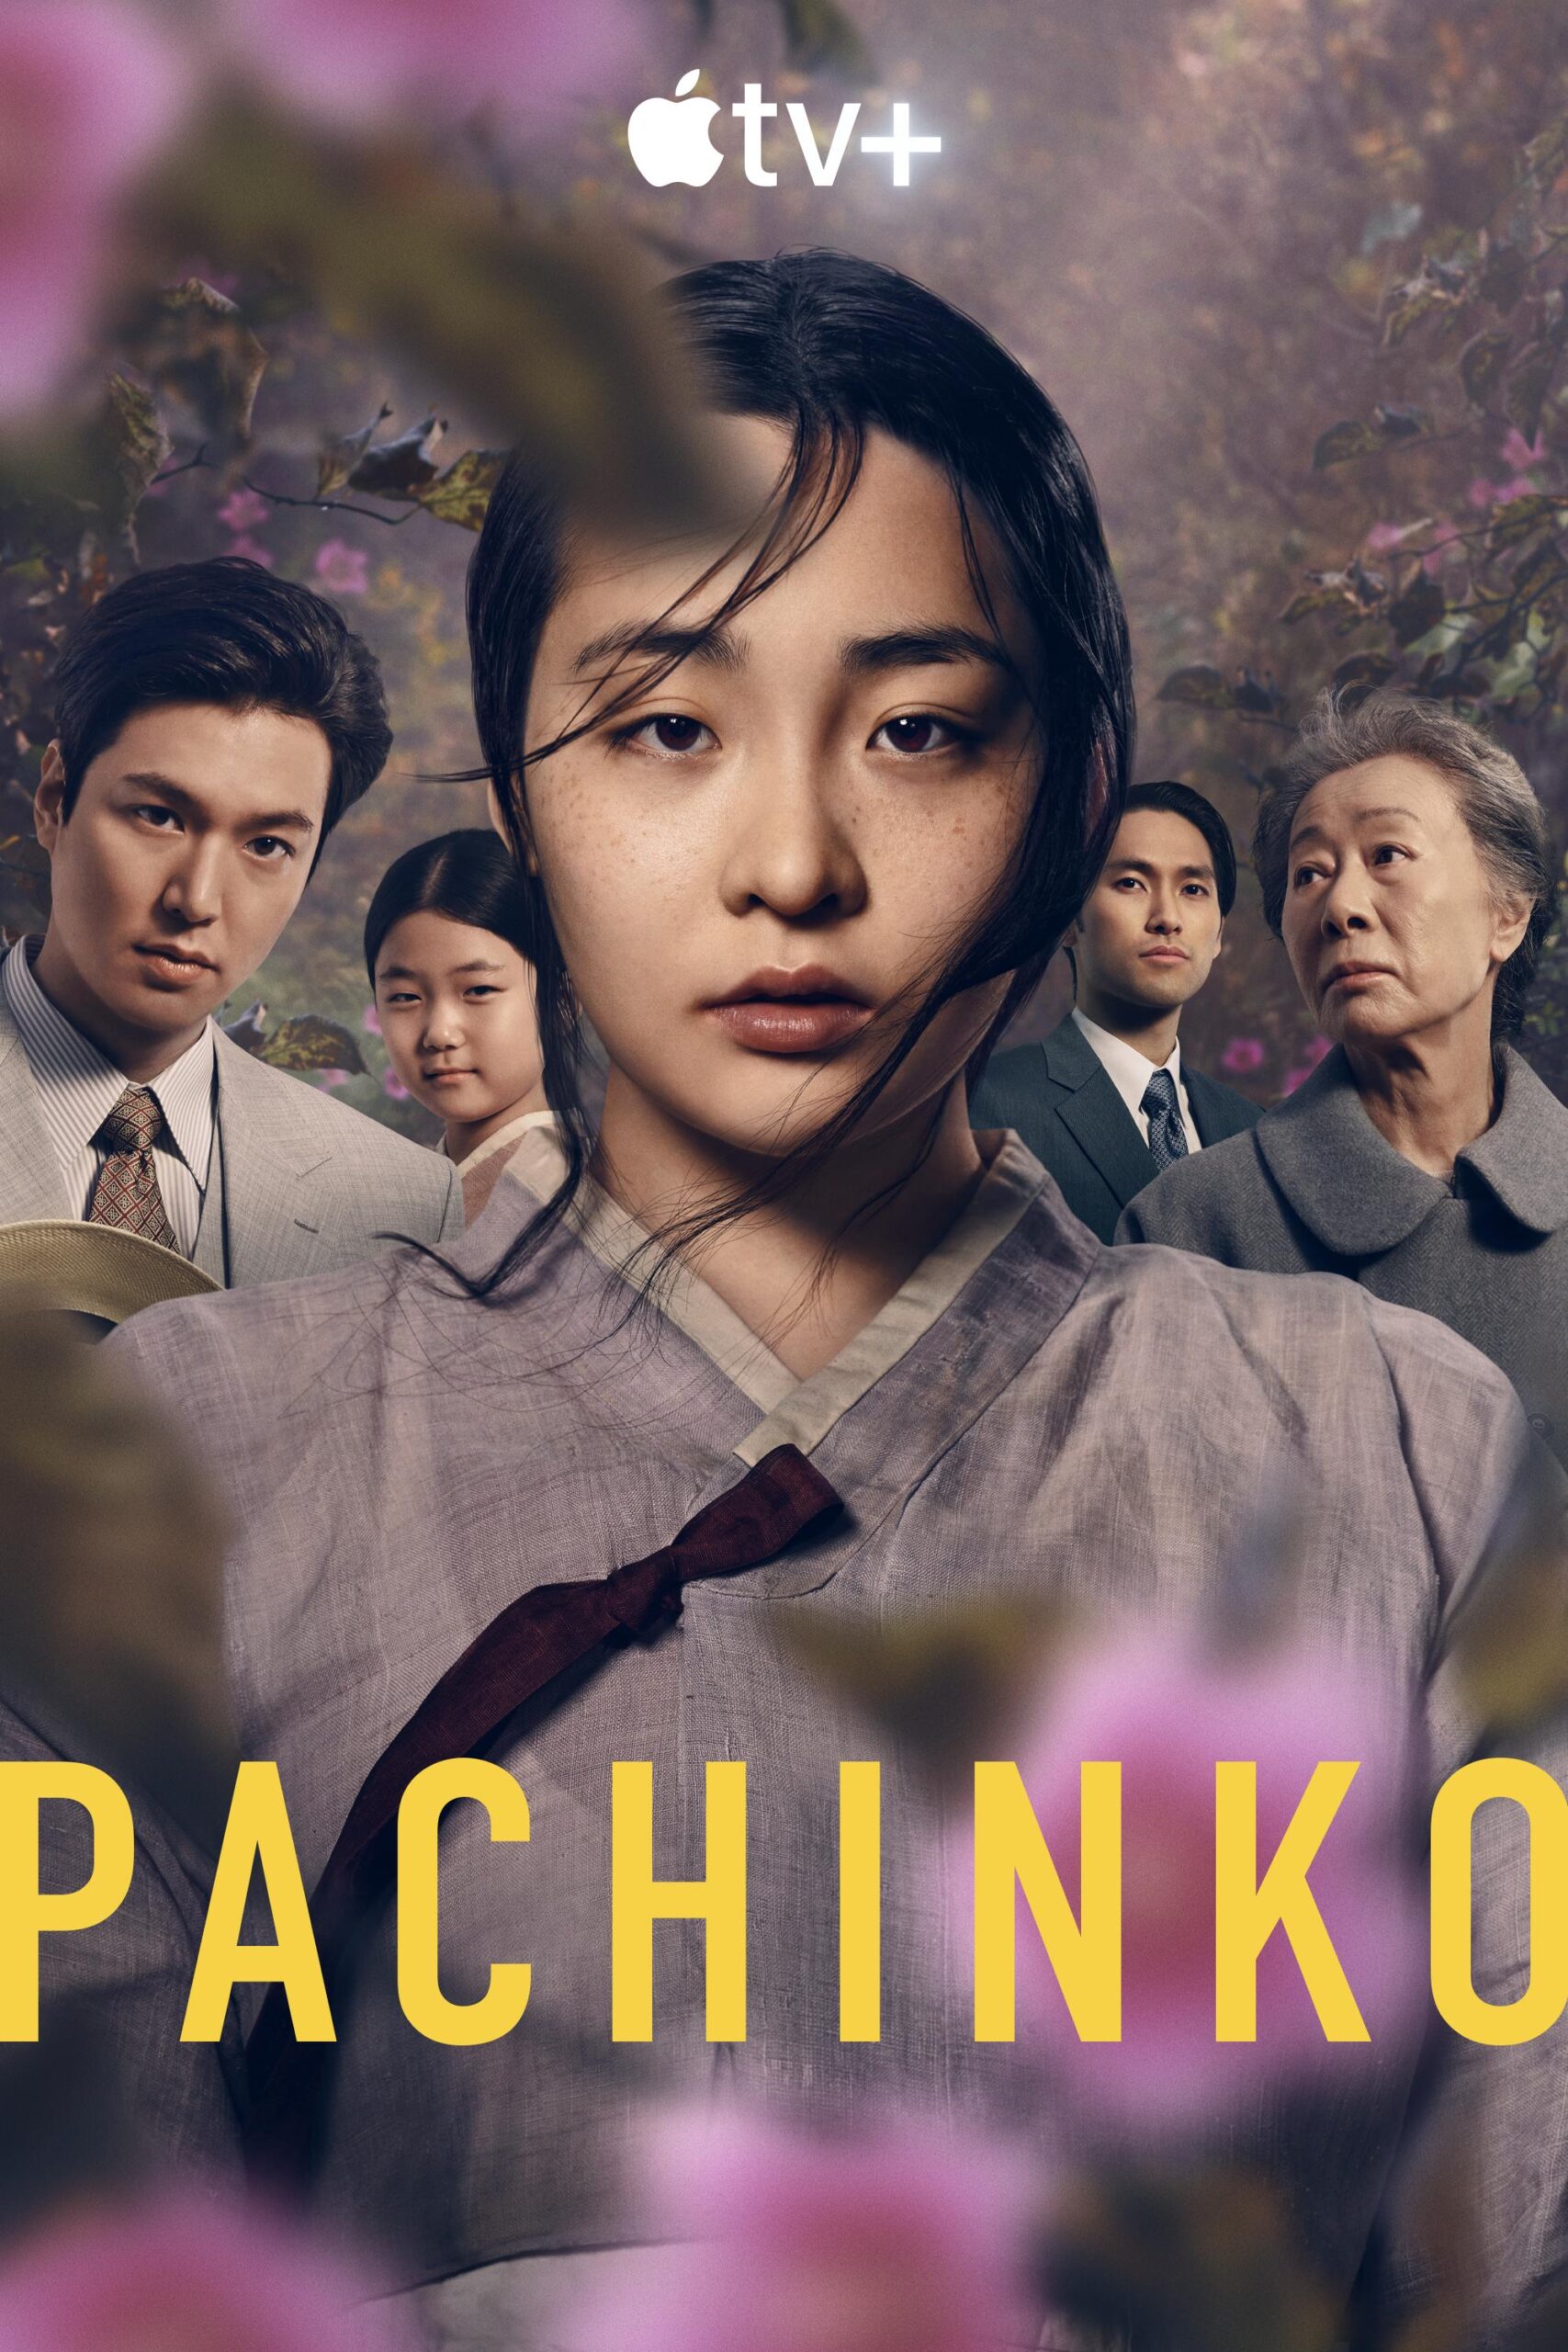 Is “Pachinko Season 1” on Apple TV+